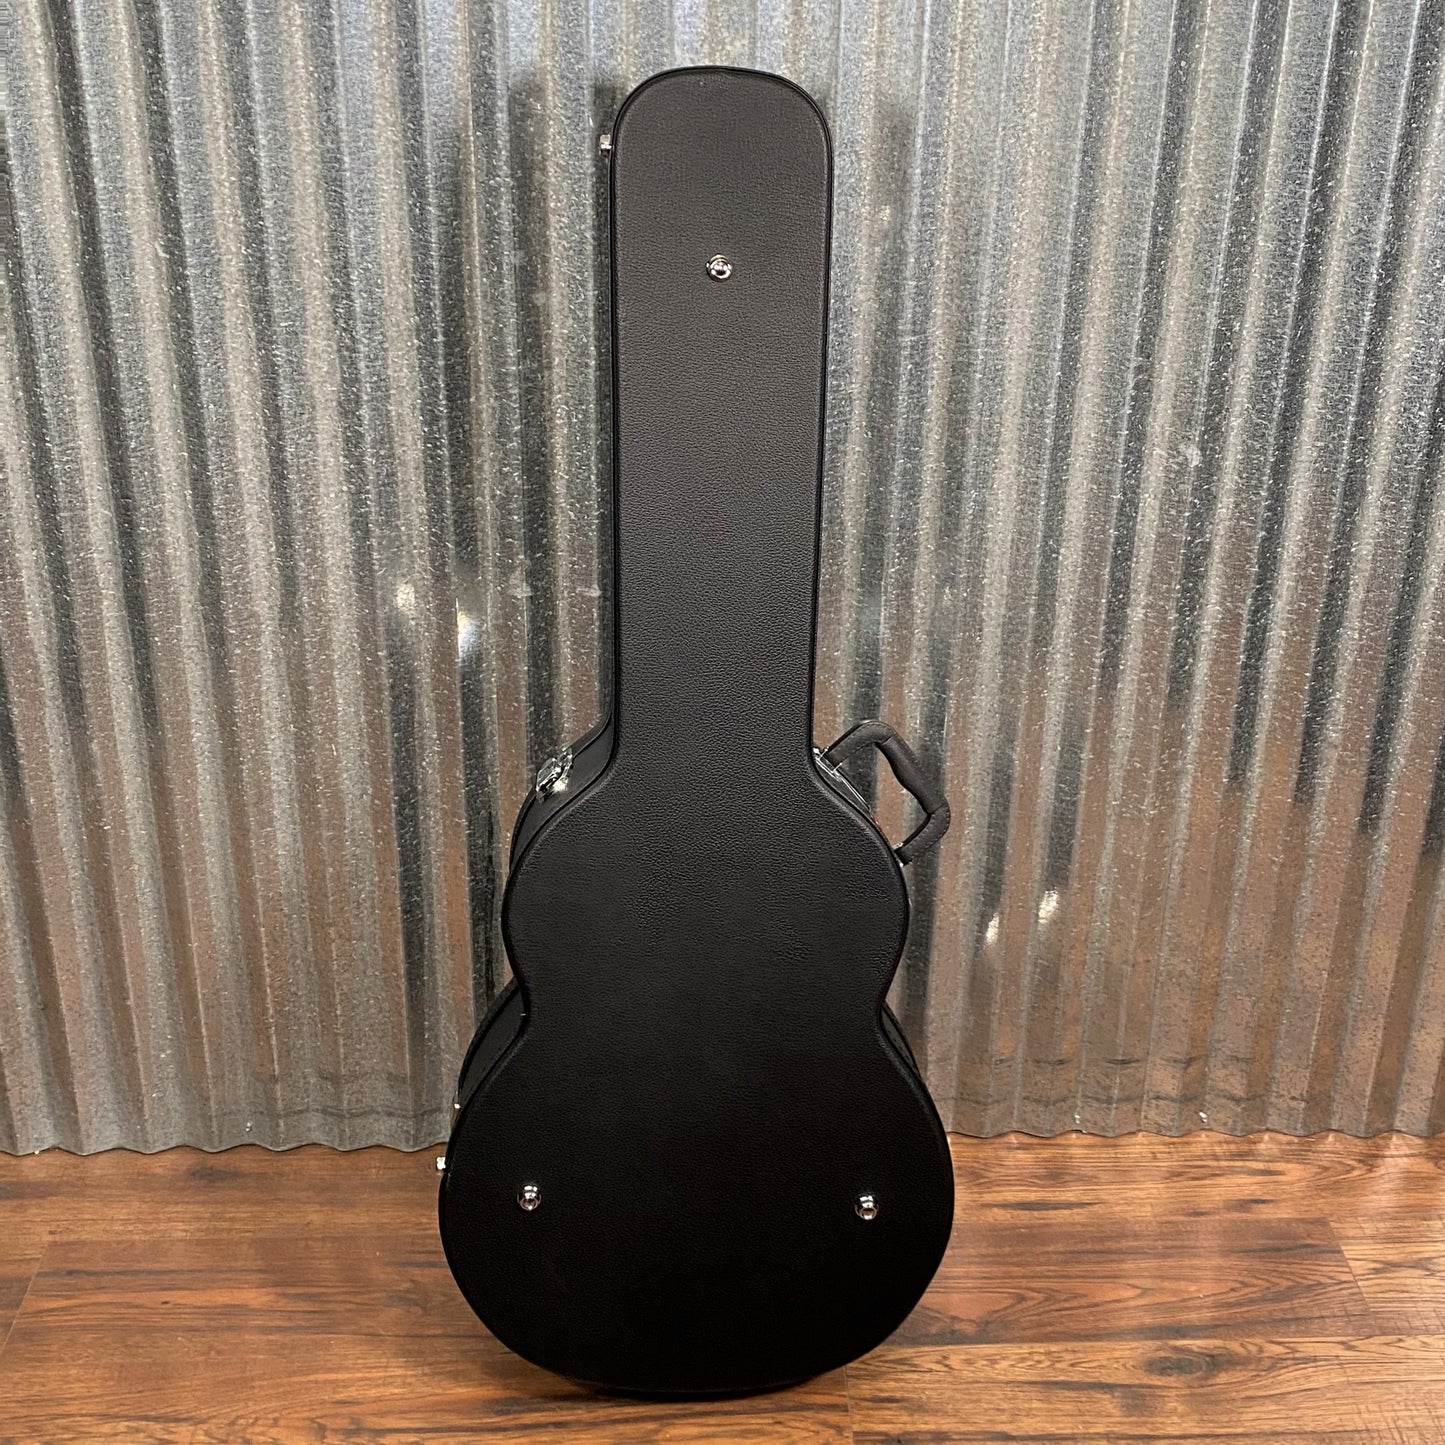 Gator GWE-000AC 000 Acoustic Guitar Wood Hardshell Case